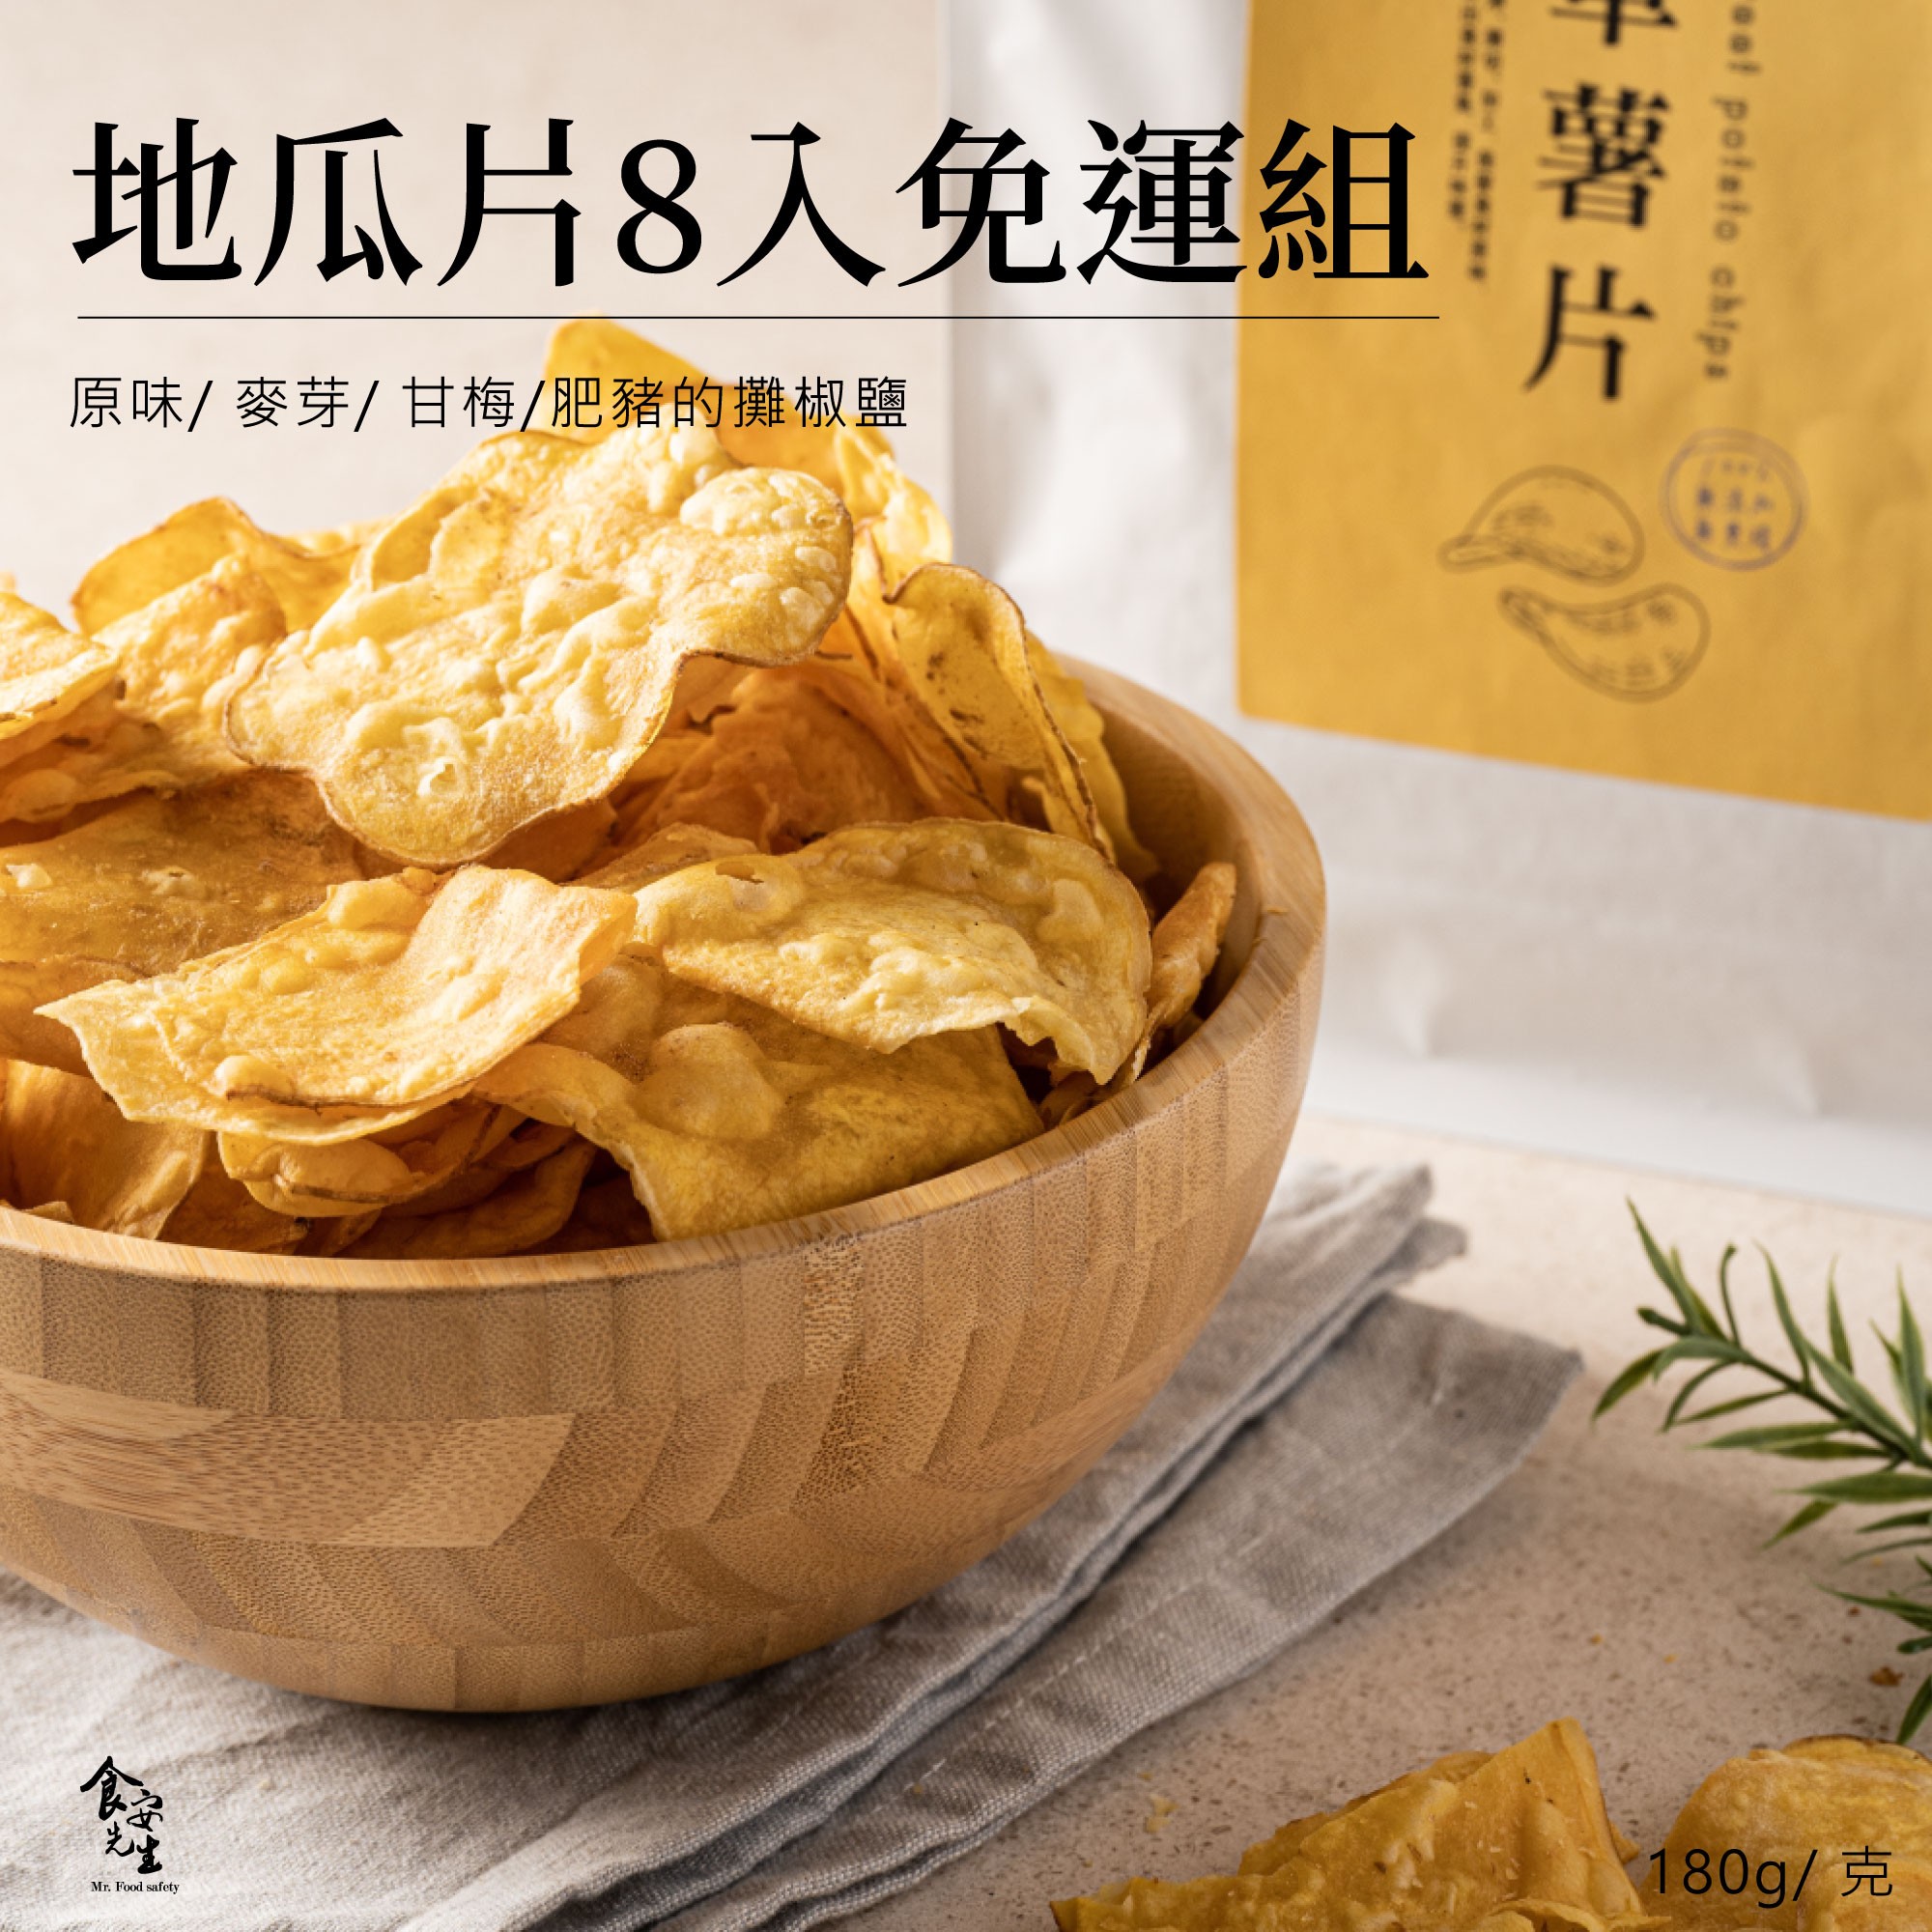 【免運】 薯片8包免運組  原味/ 甘梅/ 麥芽/ 椒鹽 薯片 180克/包 